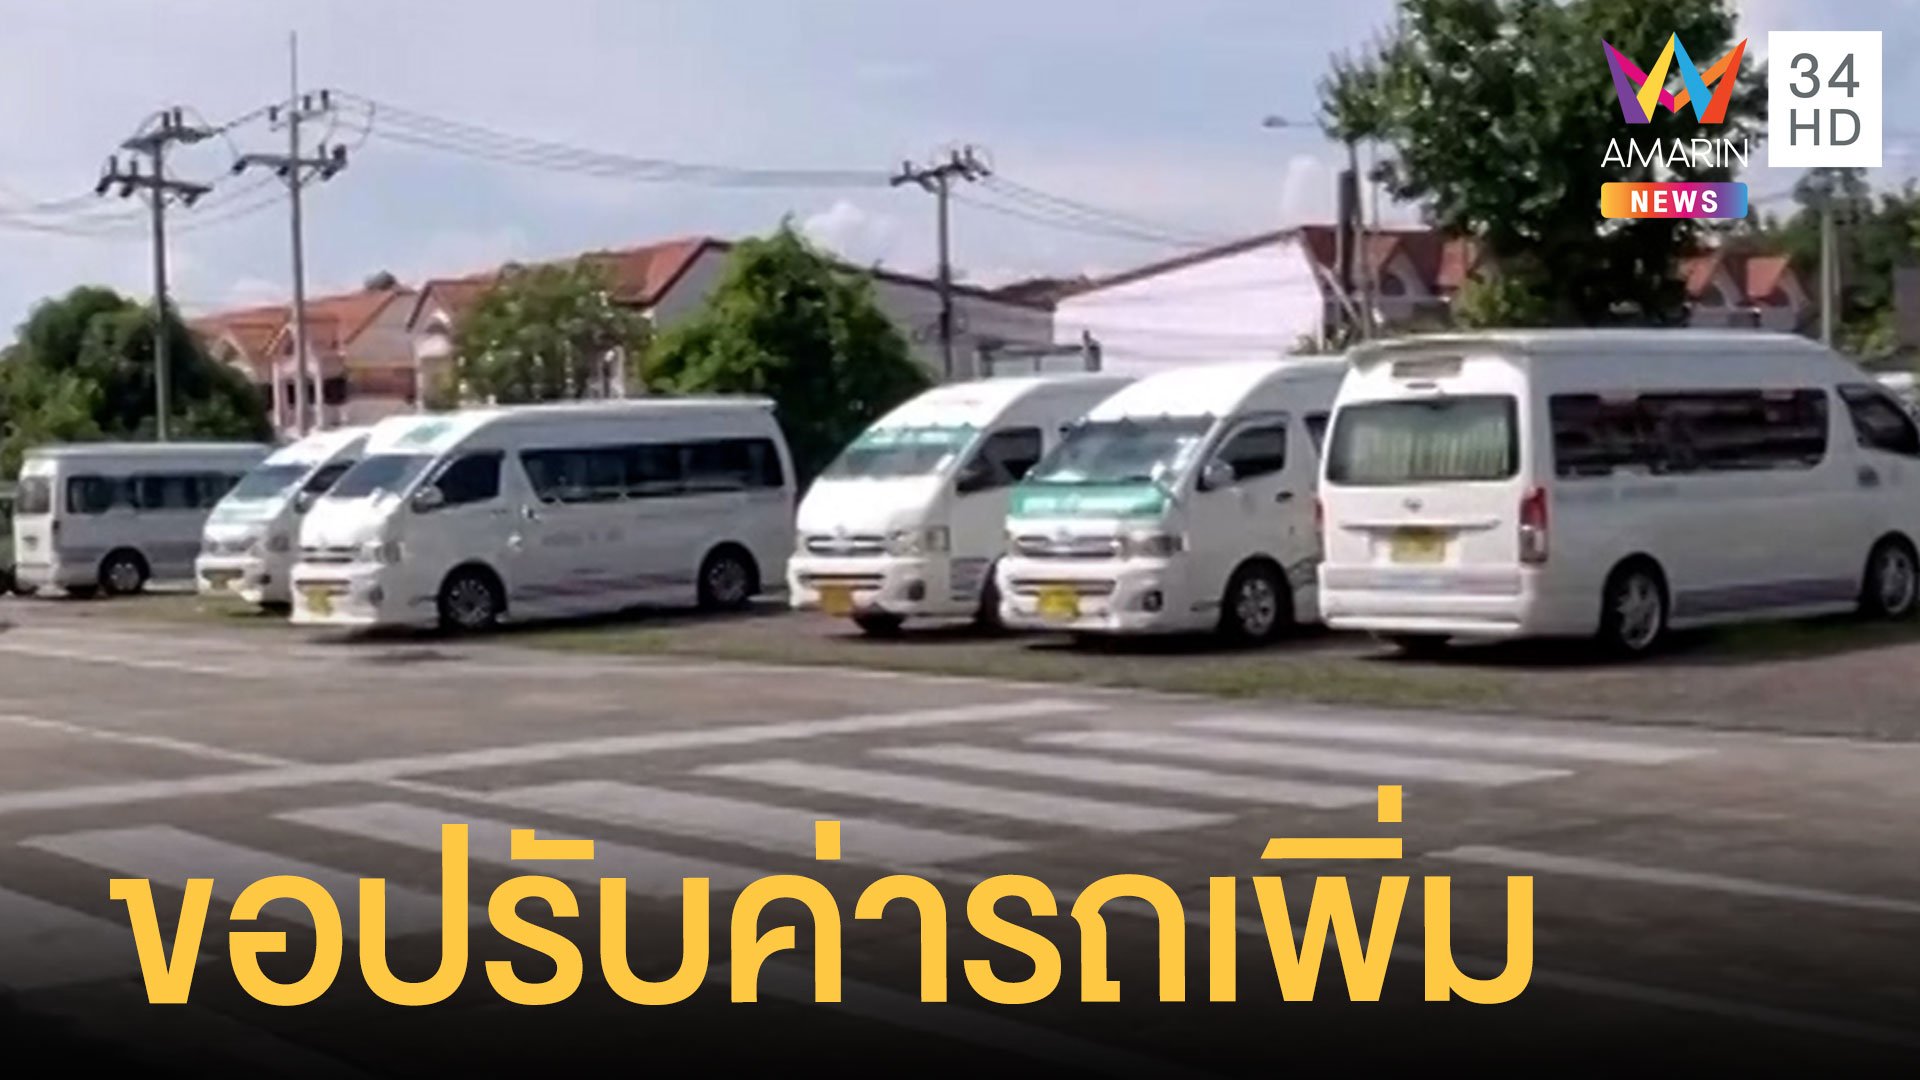 รถโดยสารขอปรับขึ้นราคาค่าโดยสาร หลังน้ำมันราคาพุ่ง | ข่าวเที่ยงอมรินทร์ | 1 พ.ค. 65 | AMARIN TVHD34